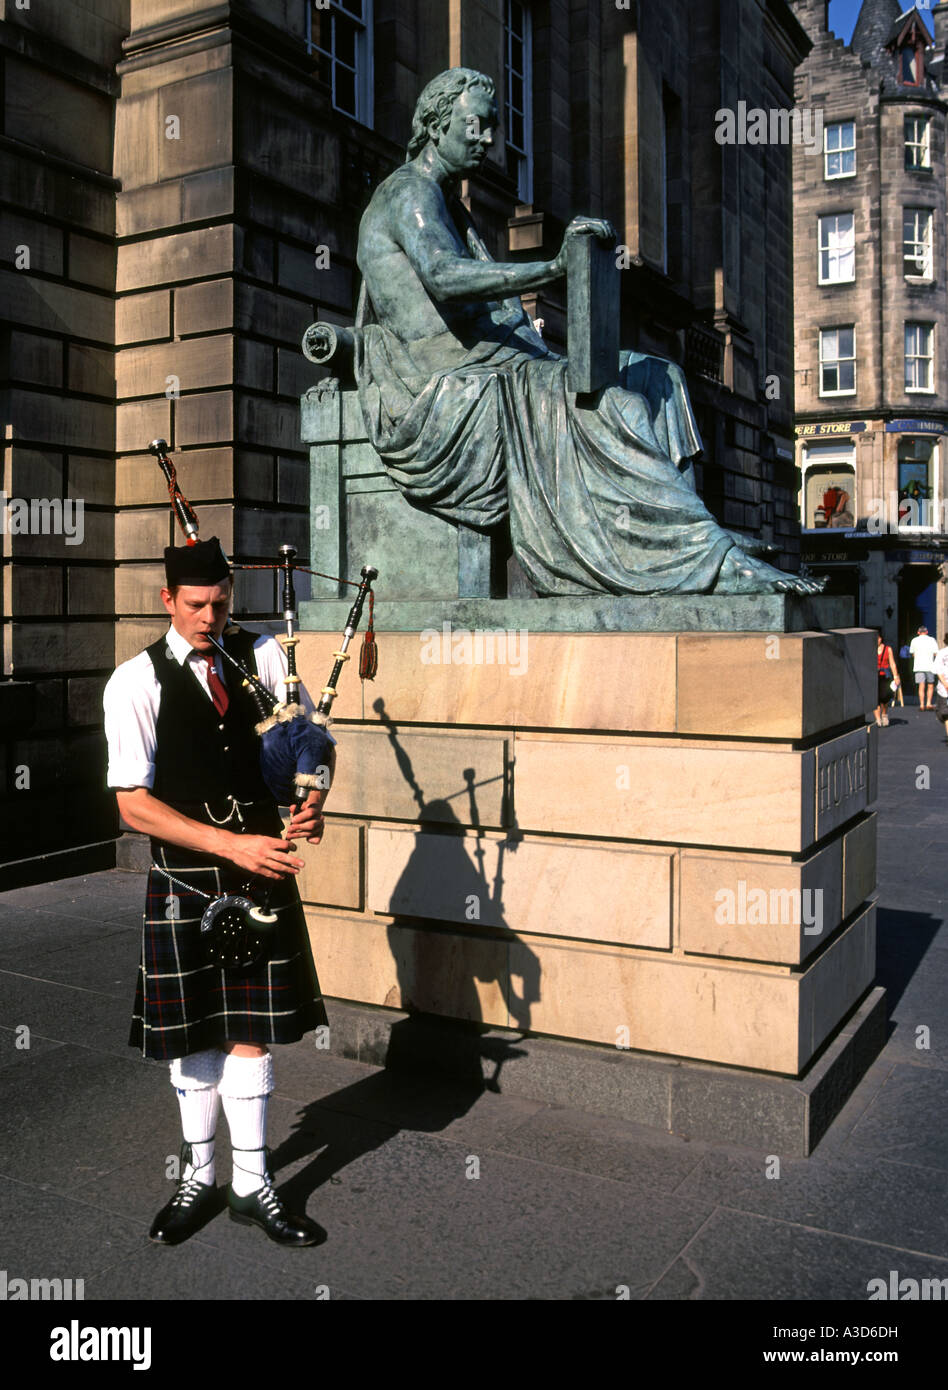 Mann spielt Dudelsack neben der Statue des David Hume (vom Bildhauer Alexander Stoddart) außerhalb der High Court von Justiciary in Edinburgh Schottland Großbritannien Stockfoto